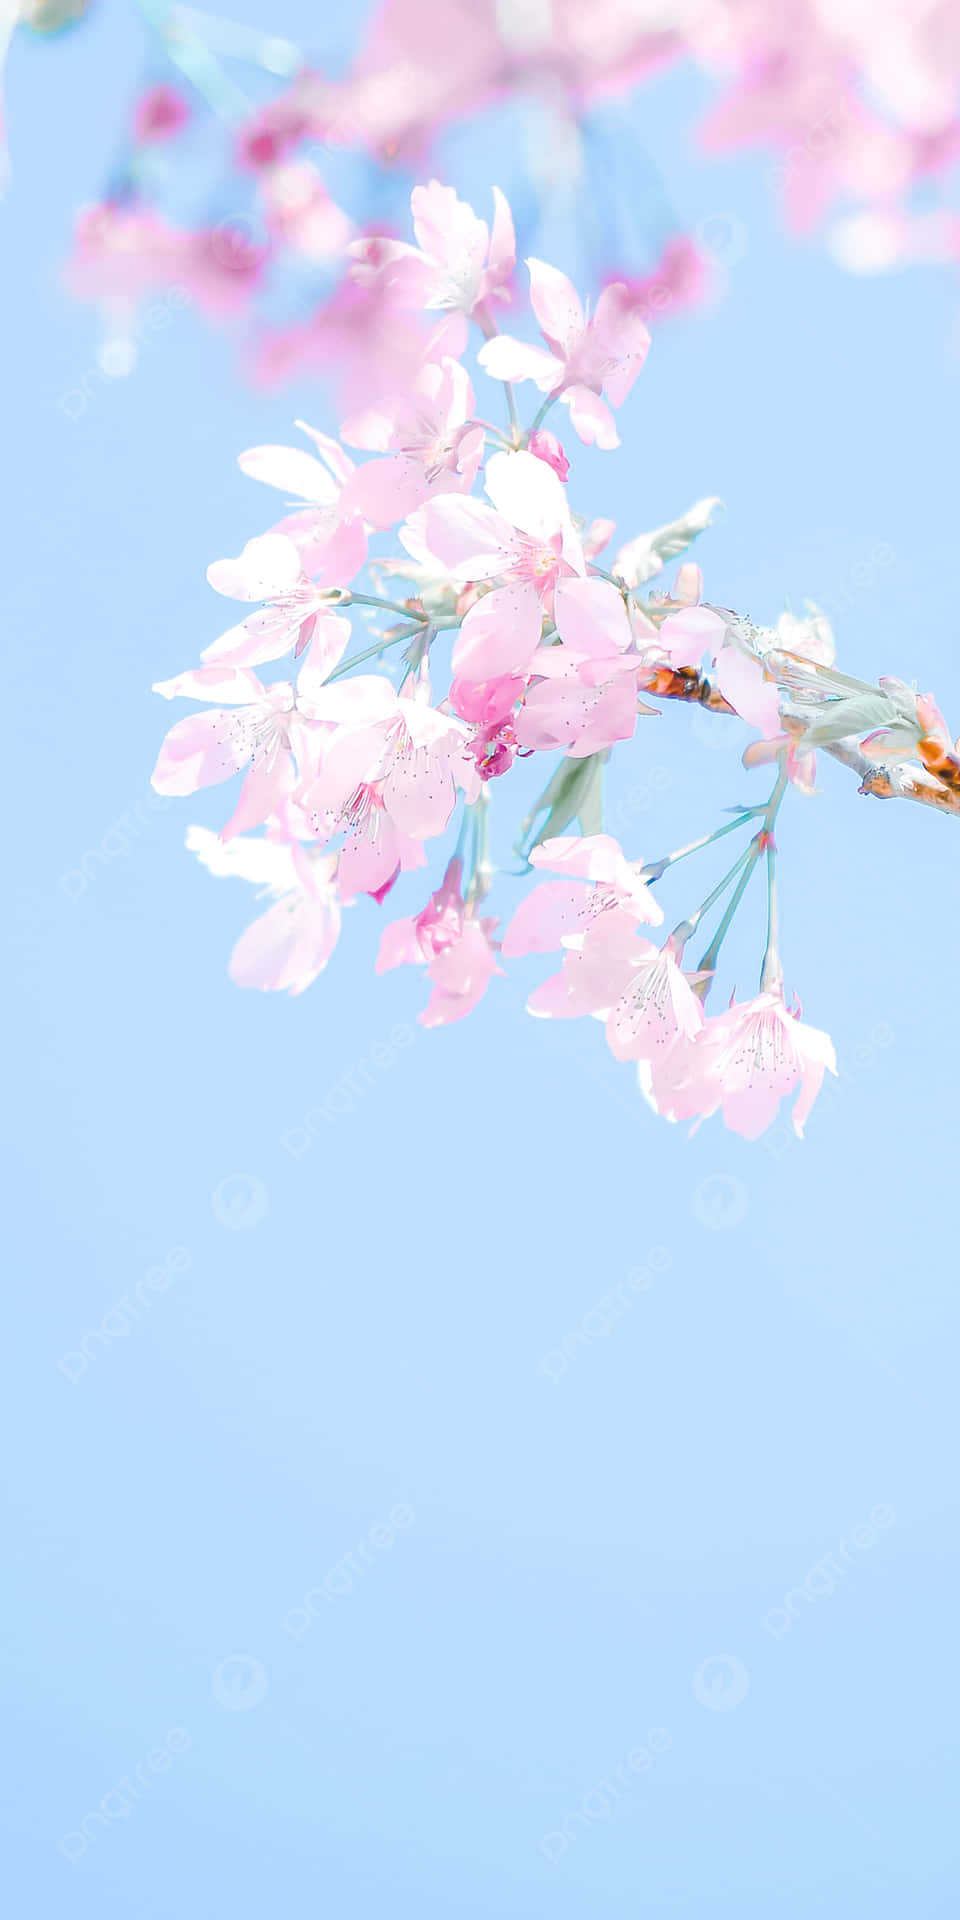 Ramade Flores De Cerezo Rosado En Primavera. Fondo de pantalla